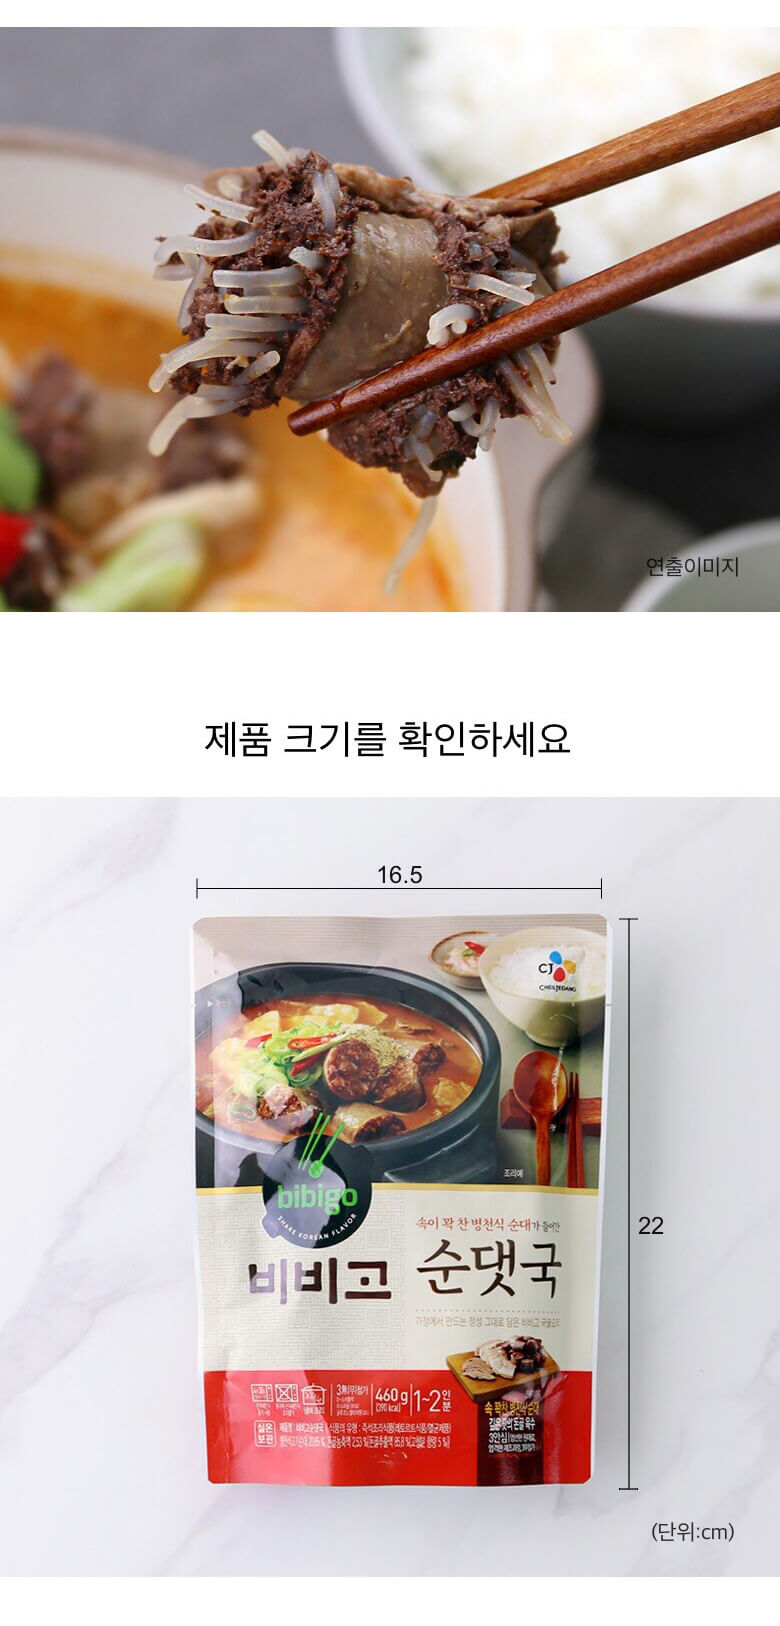 韓國食品-[CJ] 비비고 순댓국 460g